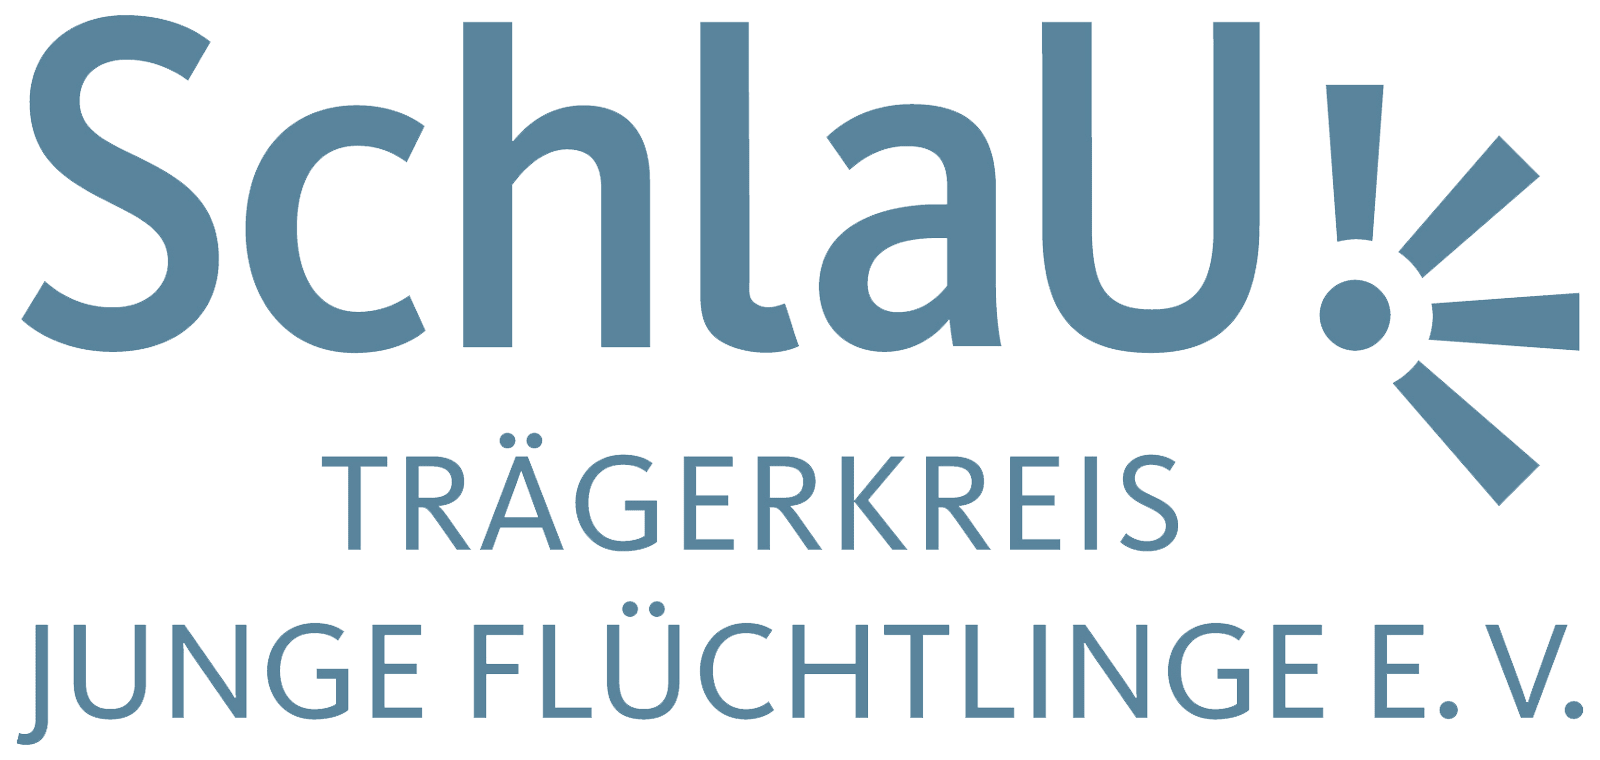 SchlaU - Schulanaloger Unterricht für Junge Flüchtlinge logo